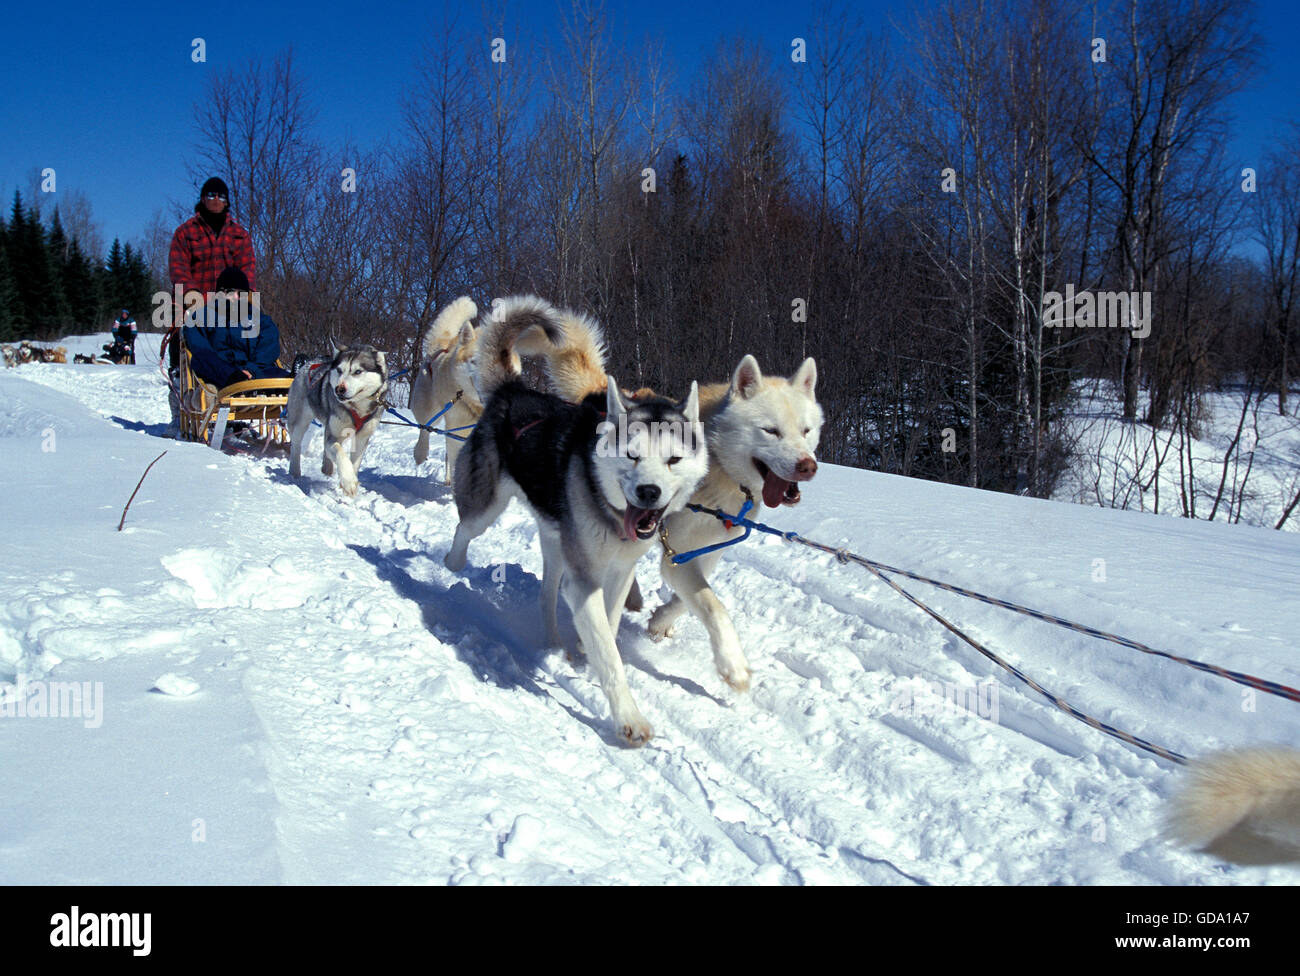 Husky de Sibérie, l'homme son traîneau de chiens de traineaux, Québec au Canada Banque D'Images